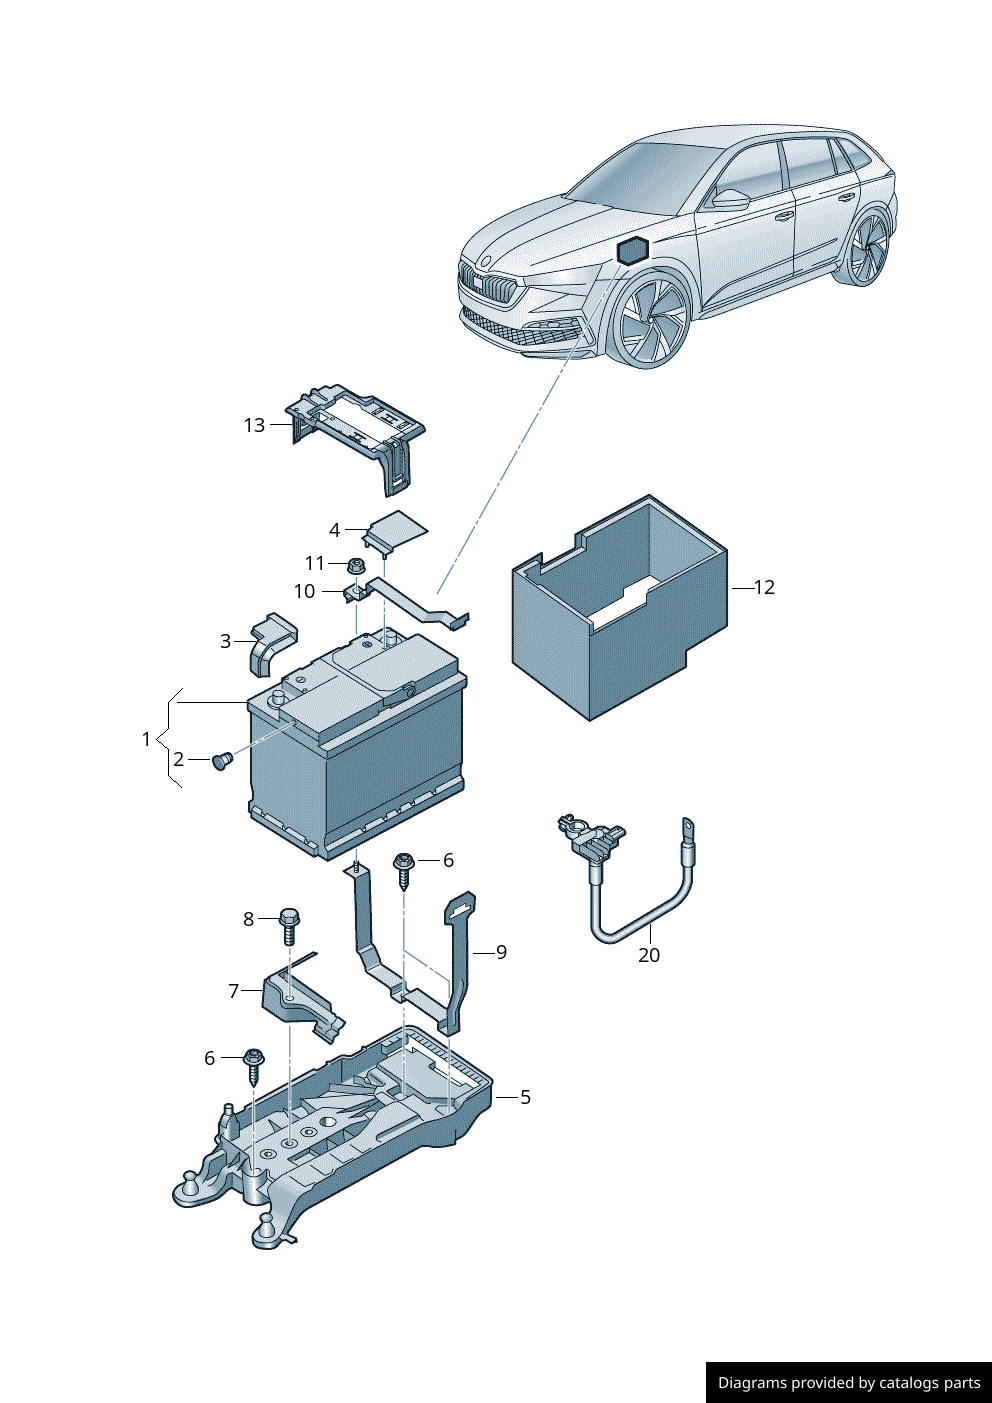 Car Battery (OEM) suitable for: Porsche, Audi, VW, Lamborghini